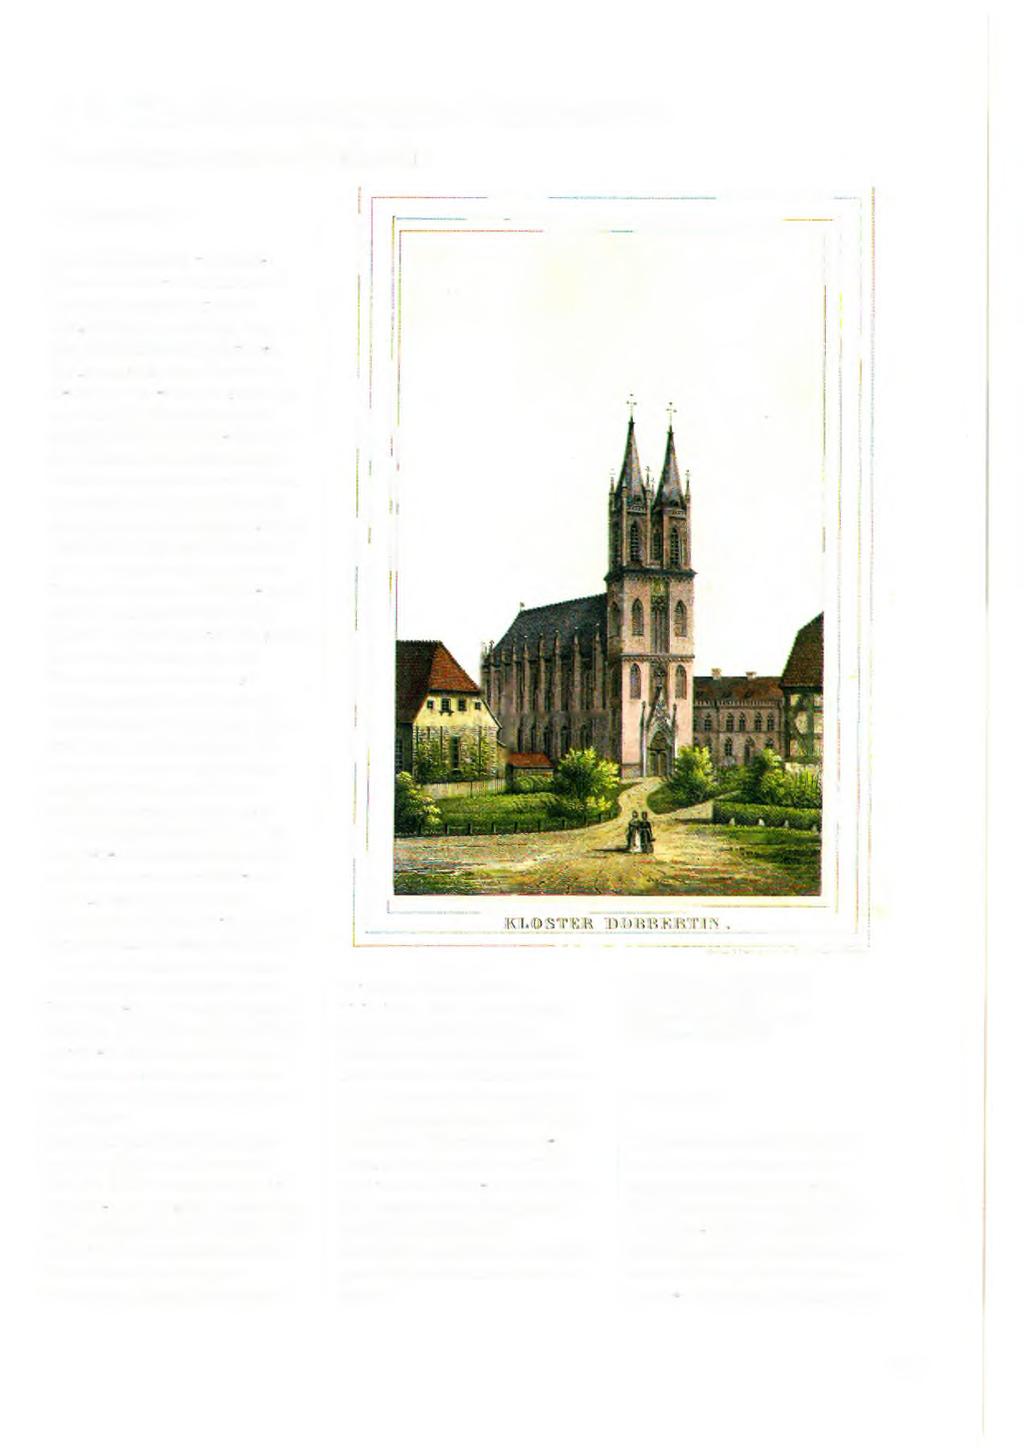 7.2 Die Klosterkirche Dobbertin The cloister church of Dobbertin Zur Geschichte L is c h (1837) schrieb zur Kirche: Das Aeußere der alten Kirche mit dem grauen Abputz hat nichts Merkwürdiges, sondern